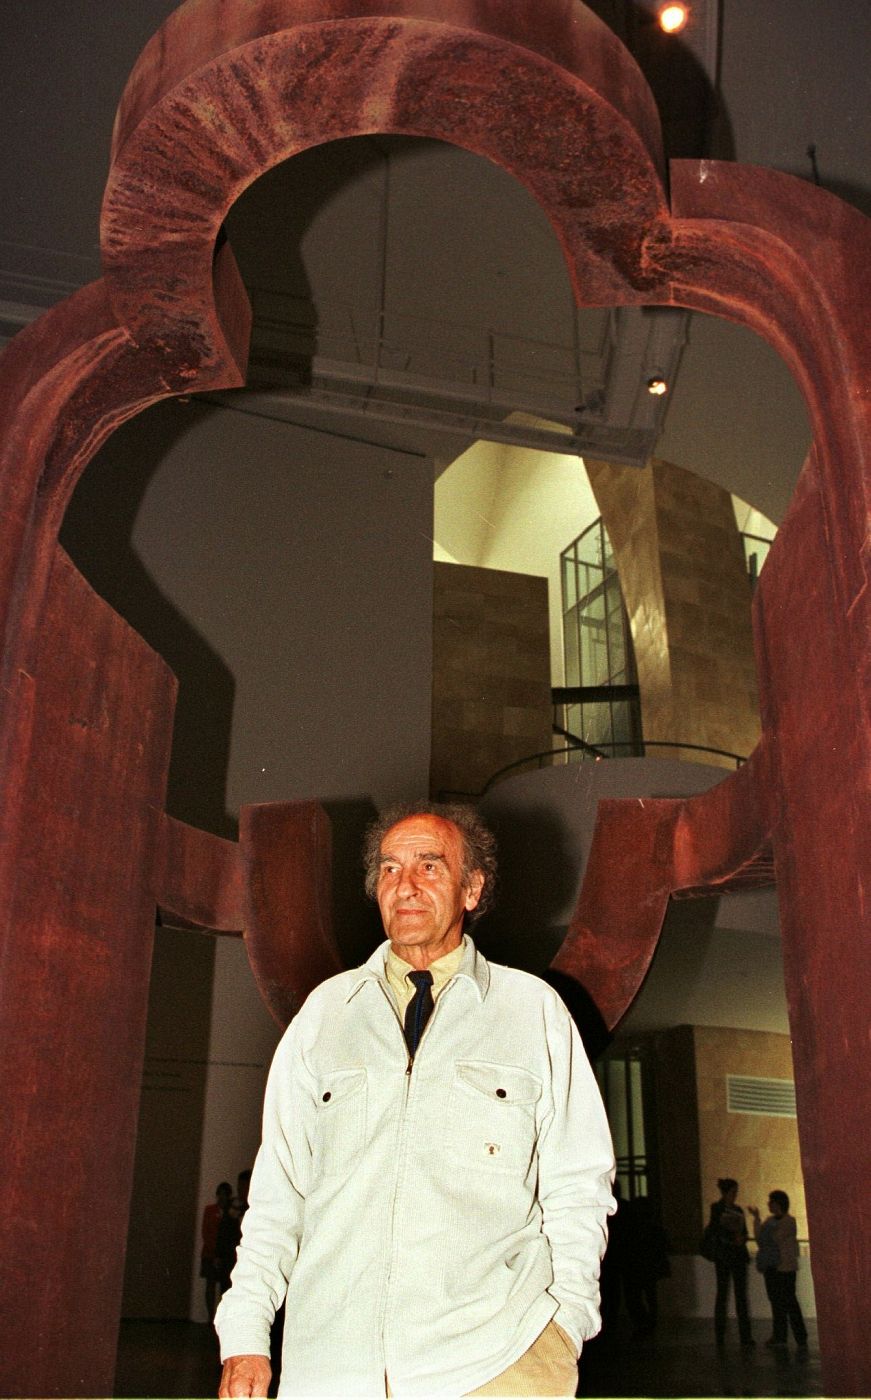  Eduardo Chillida, en el Museo Guggenheim Bilbao durante la presentación de su exposición.